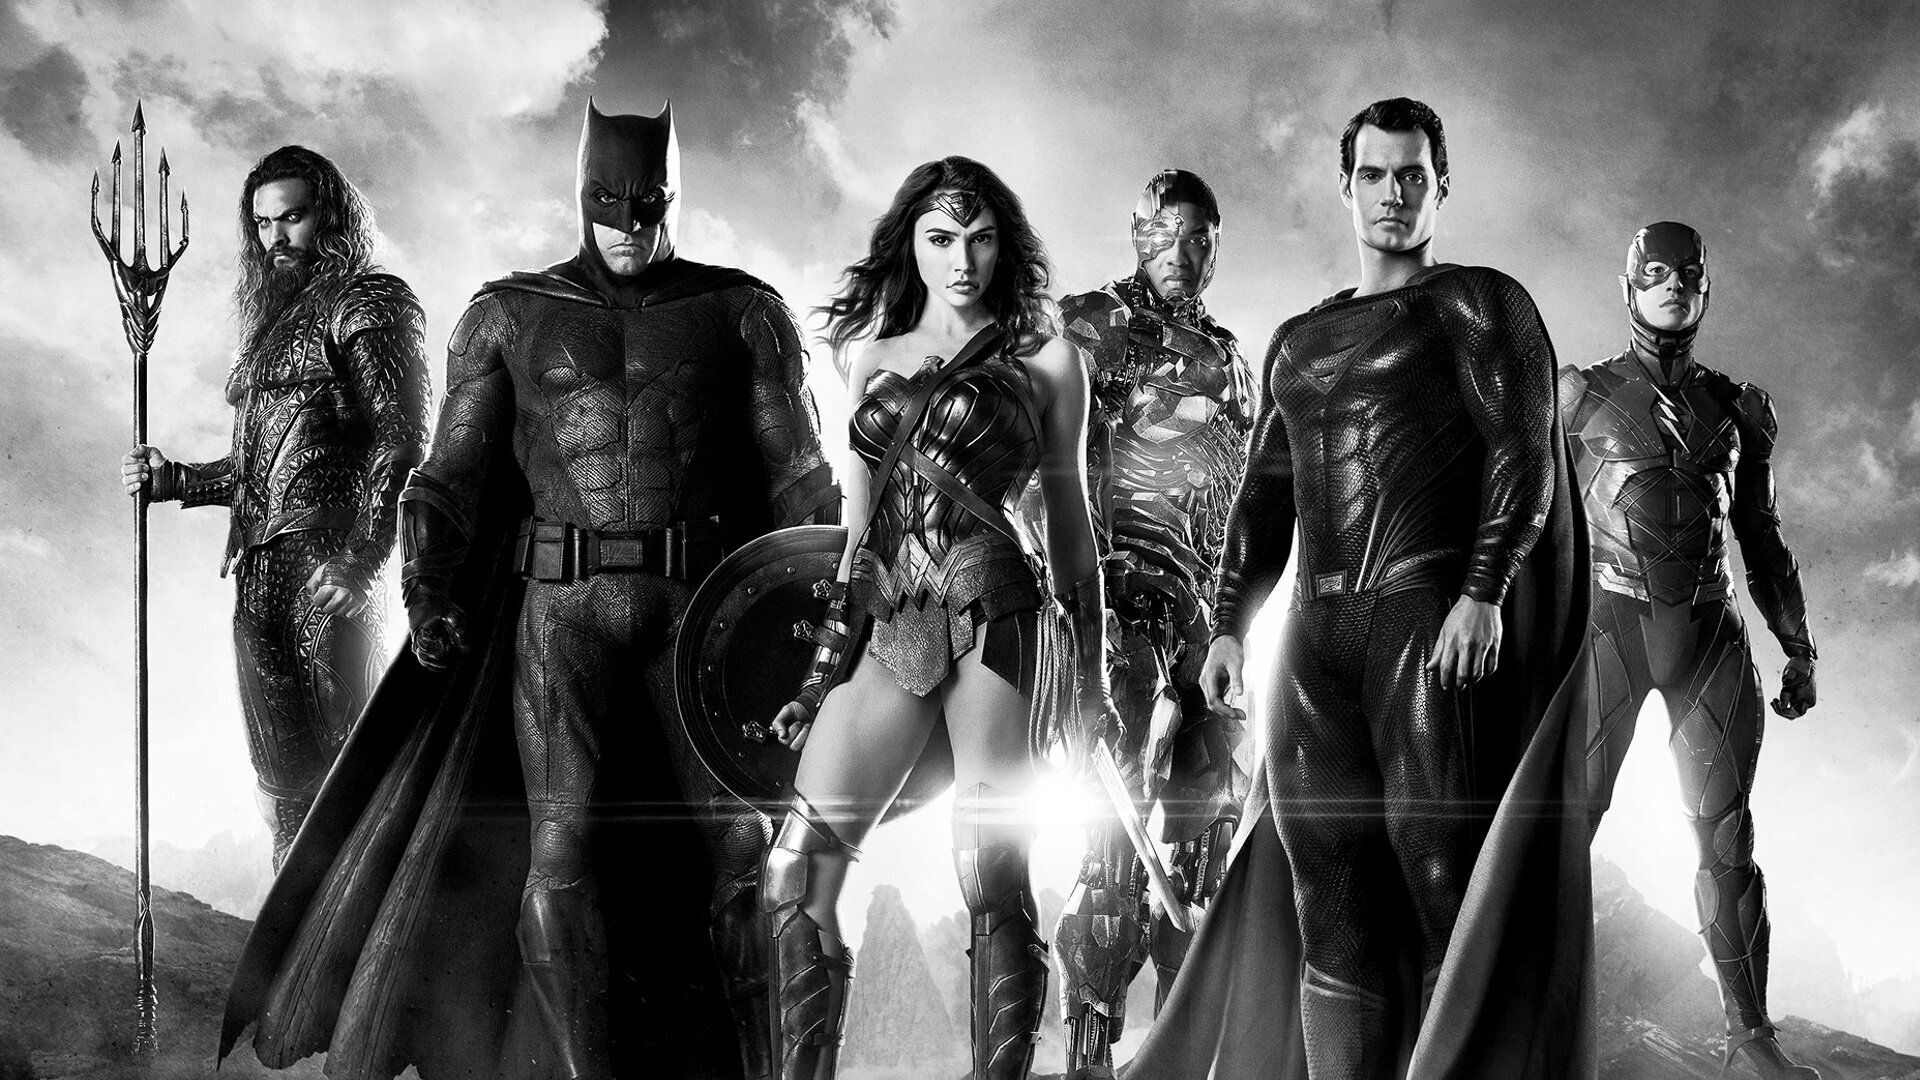 ზაკ სნაიდერის სამართლიანობის ლიგა (B&W) / Zack Snyder's Justice League (B&W)